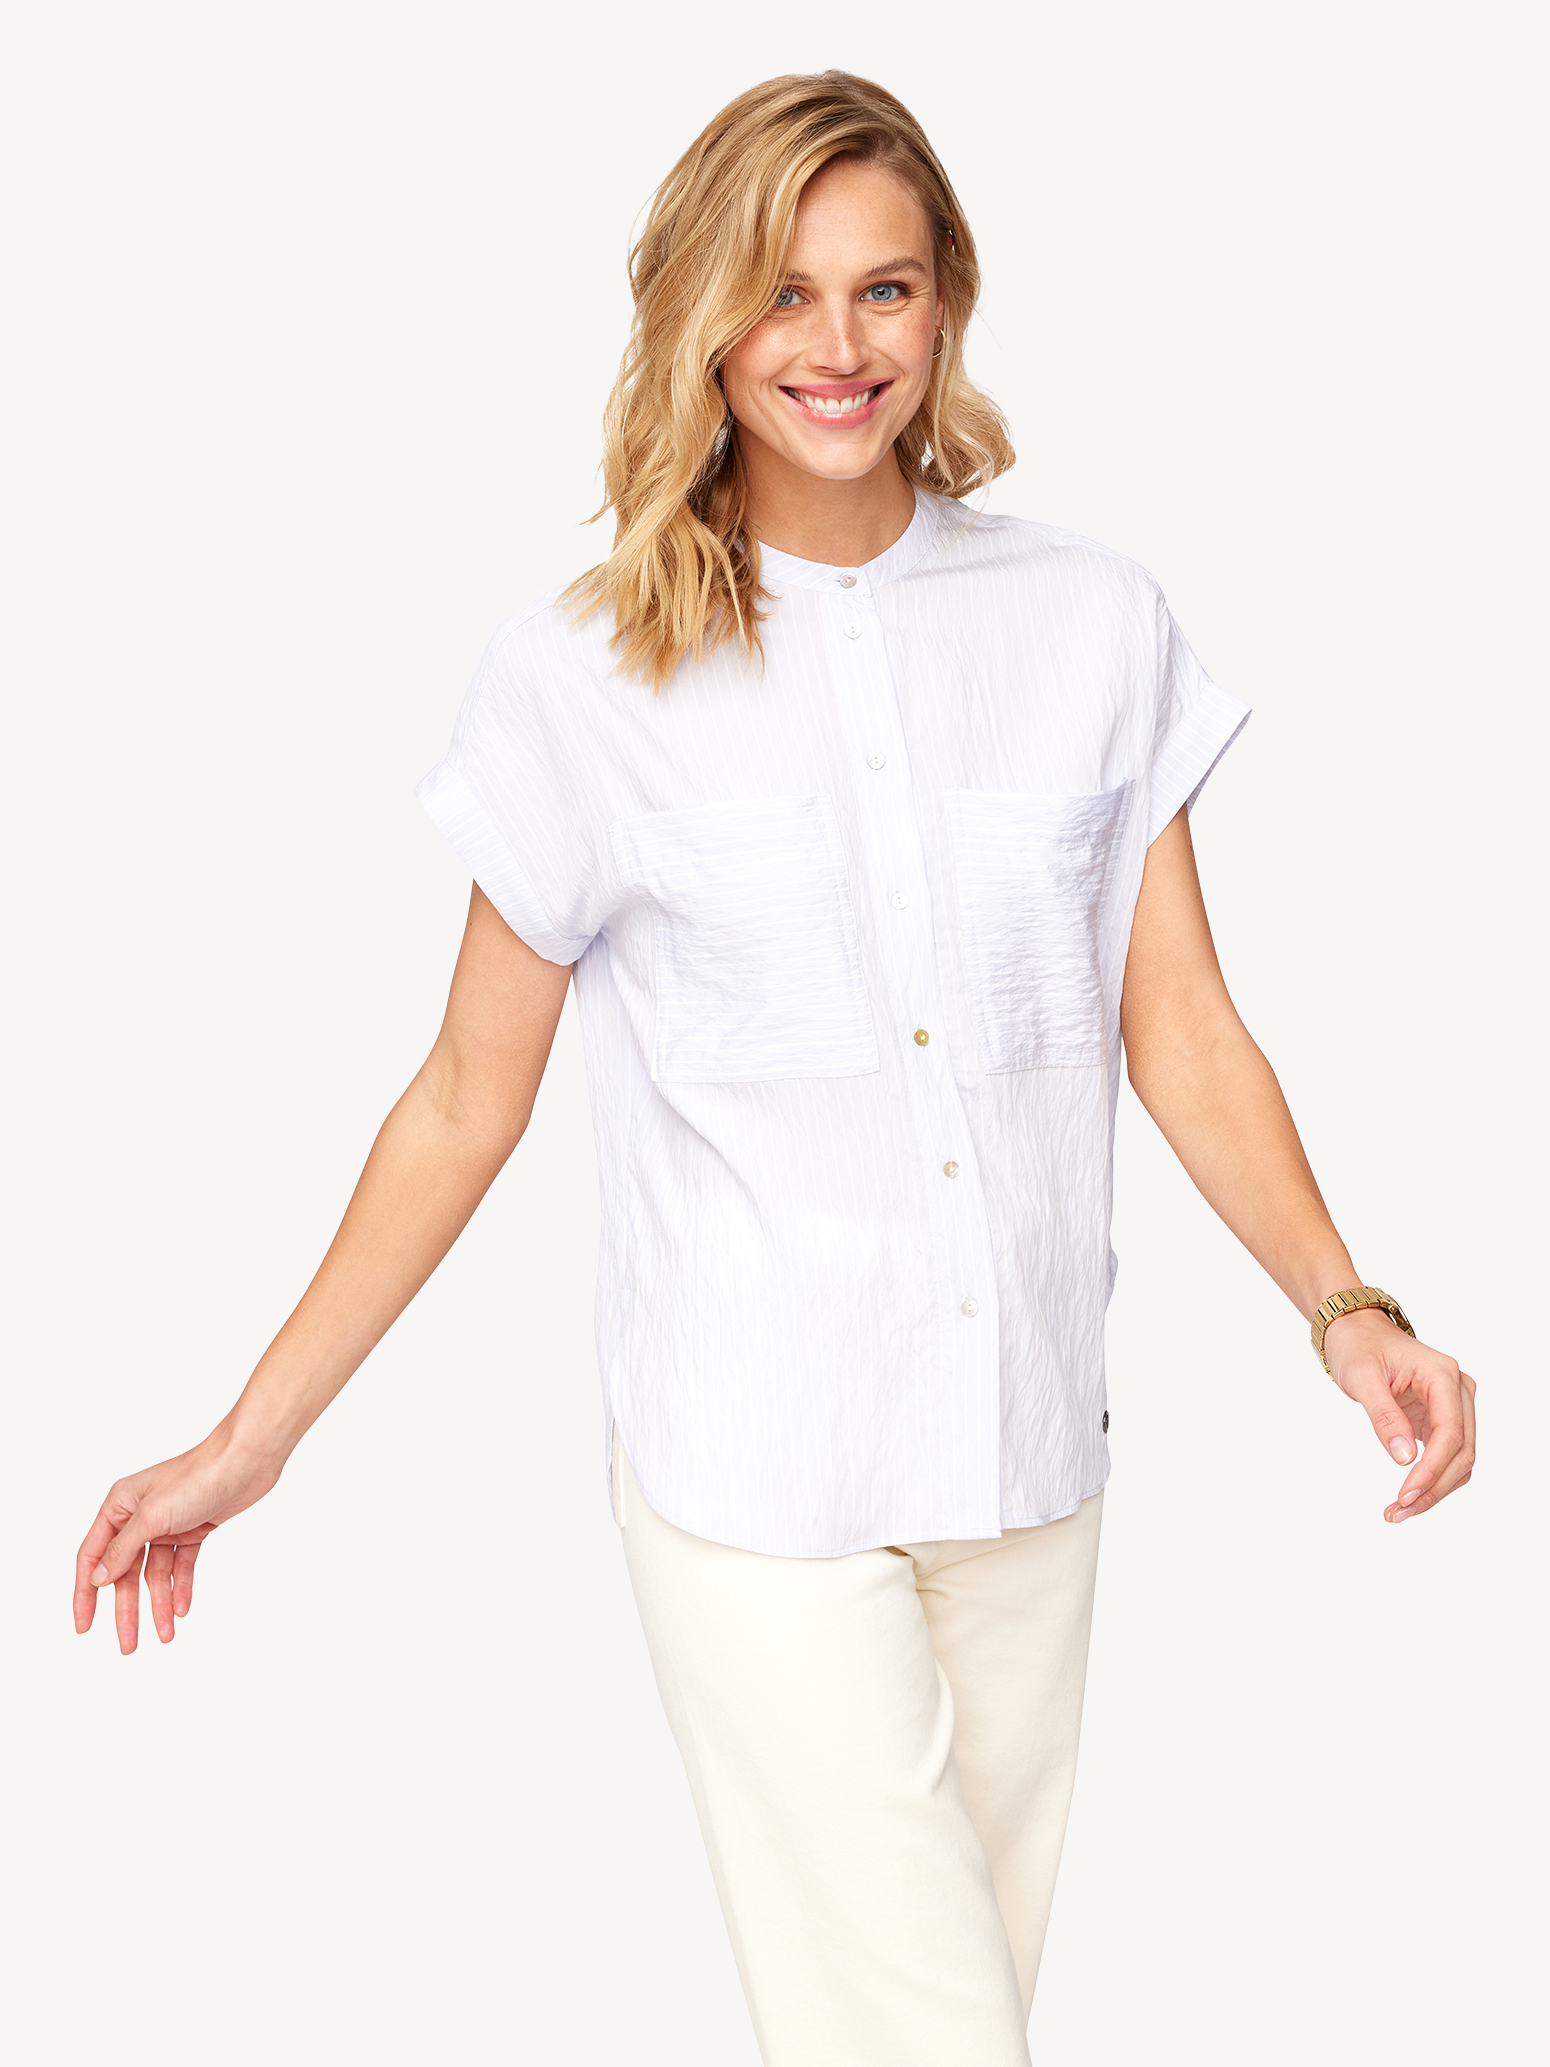 Bluse - blau TAW0103-53117: Tamaris Hemden & Blusen online kaufen!